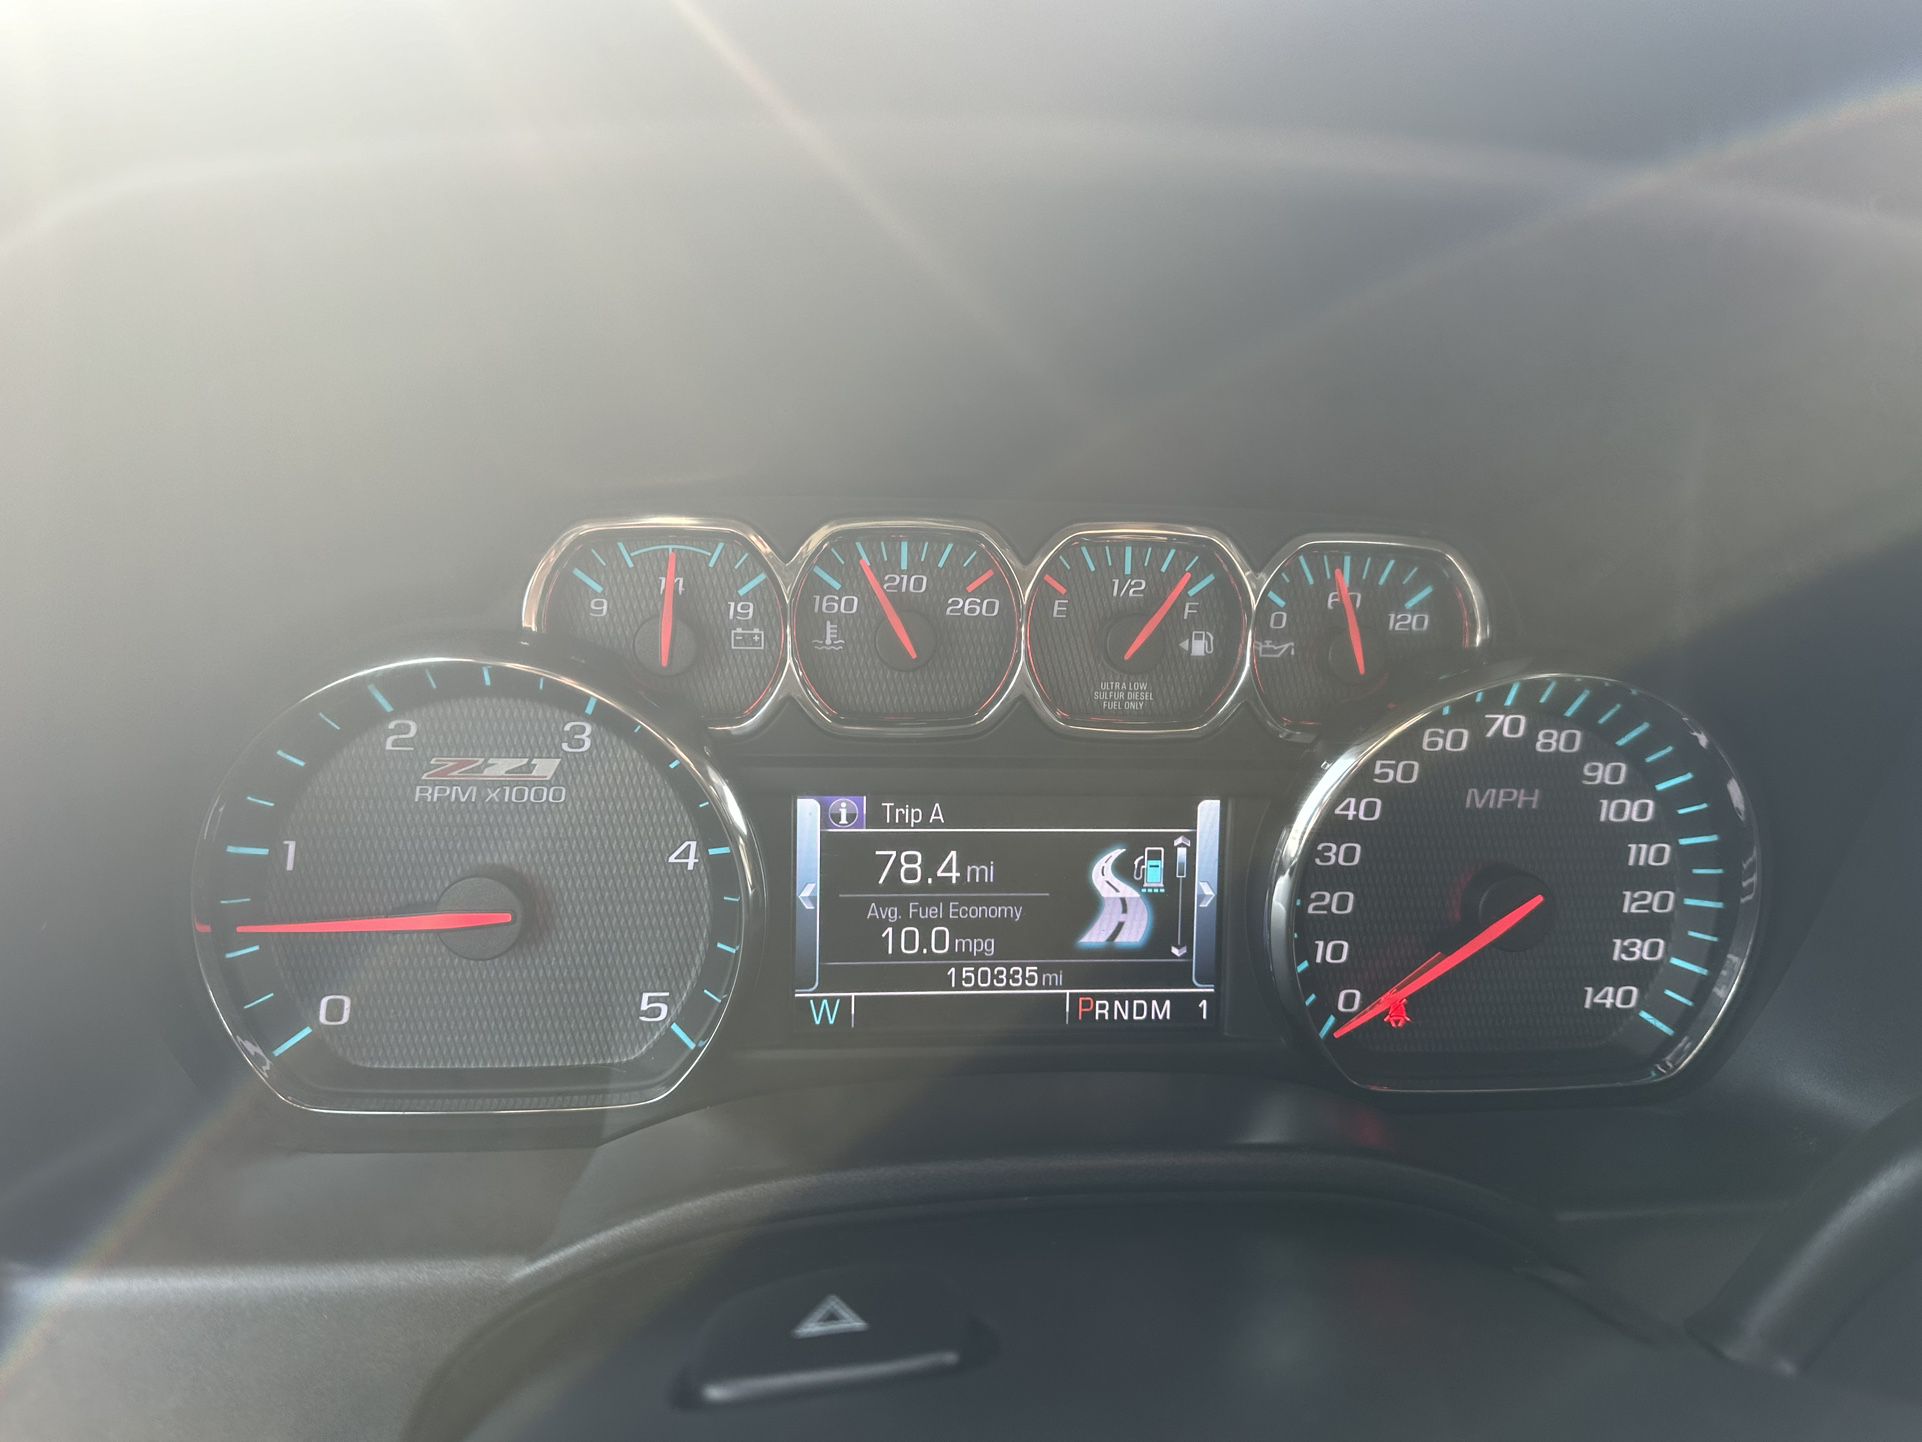 used 2016 Chevy Silverado Z71 diesel 4x4 crew cab - interior view 2